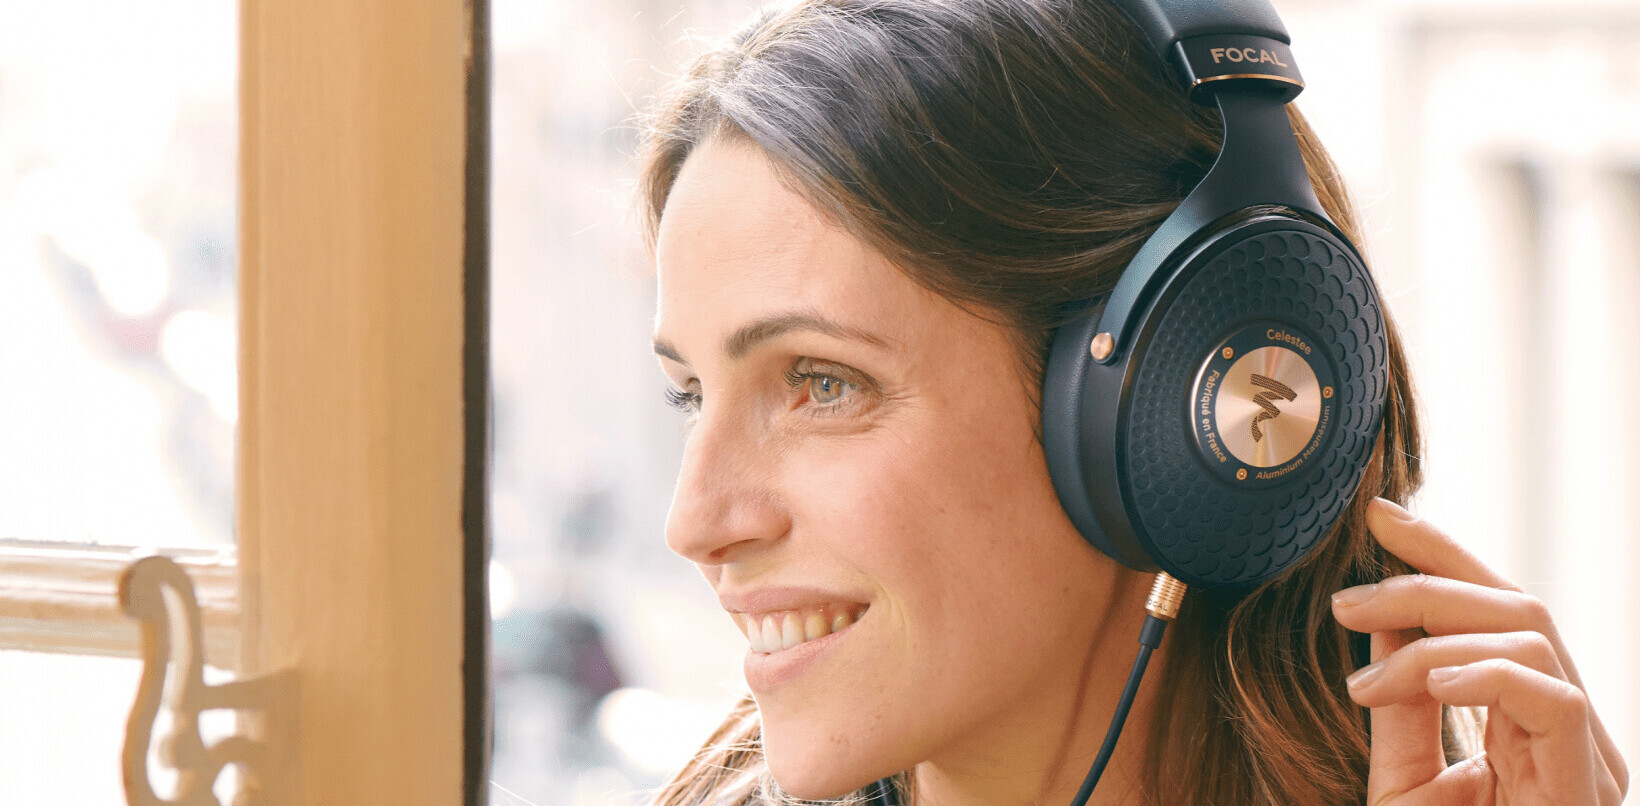 Focal’s new Celestee headphones are a $990 audiophile luxury